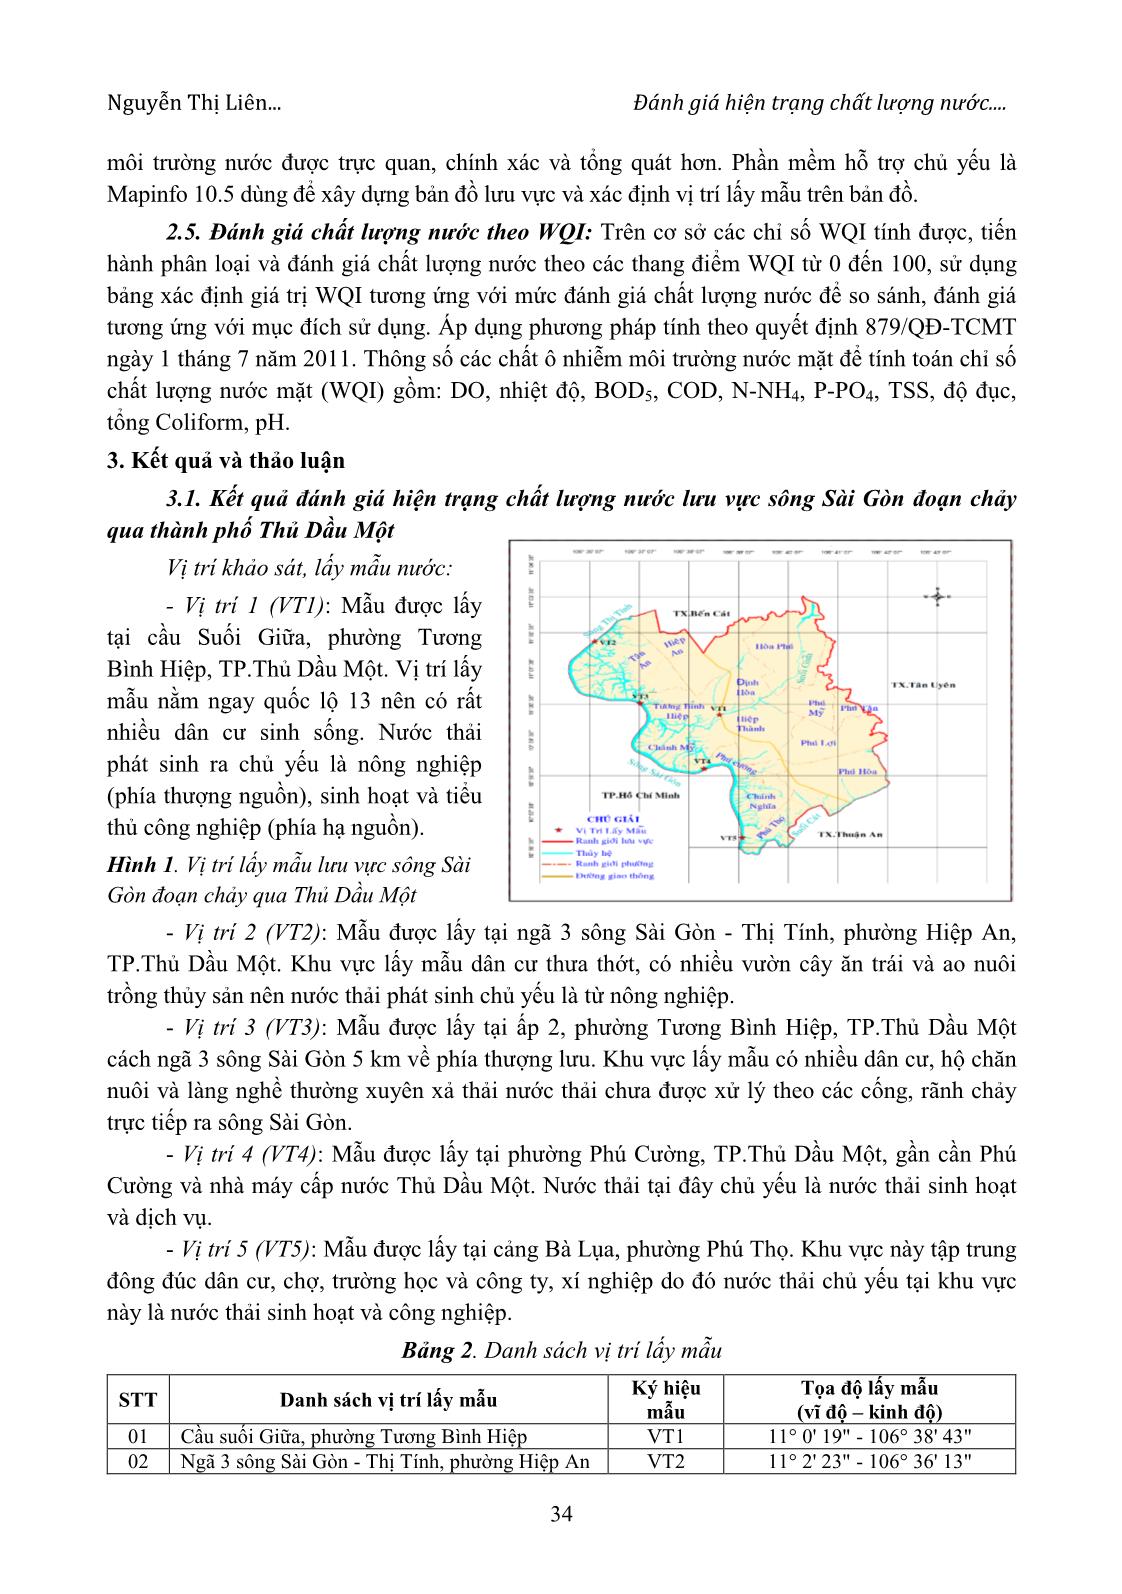 Đánh giá hiện trạng chất lượng nước và đề xuất các biện pháp kiểm soát ô nhiễm sông Sài Gòn đoạn chảy qua thành phố Thủ Dầu Một trang 3